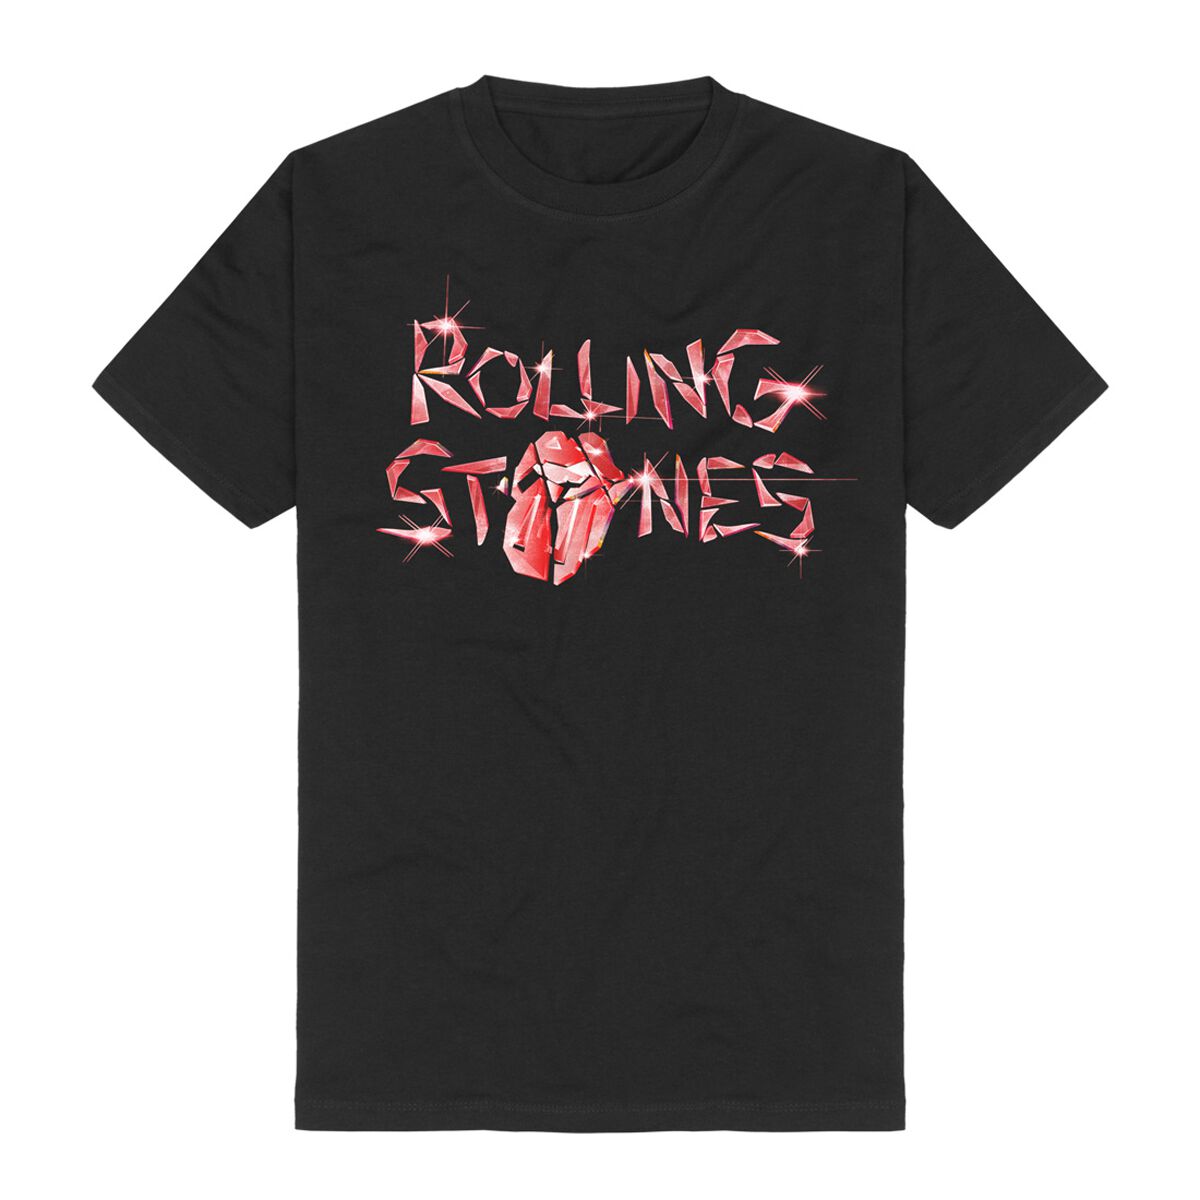 The Rolling Stones T-Shirt - Hackney Diamonds Glass Logo - S bis 5XL - für Männer - Größe 3XL - schwarz  - Lizenziertes Merchandise!